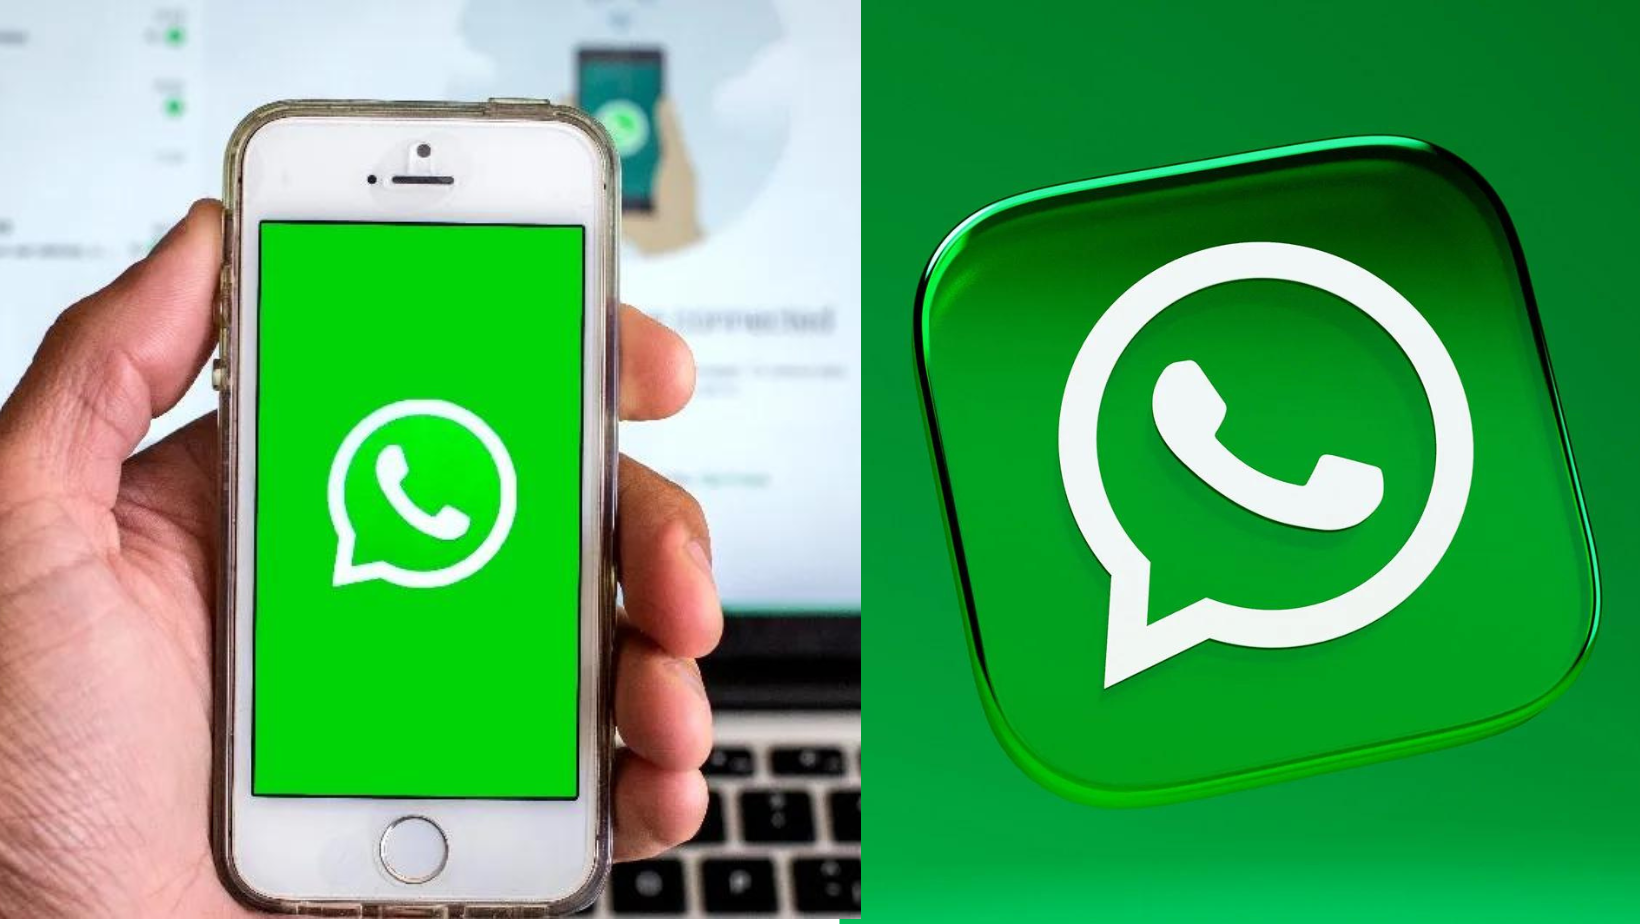 WhatsApp Payant TF1 : Décryptage des Rumeurs et Canulars Persistants